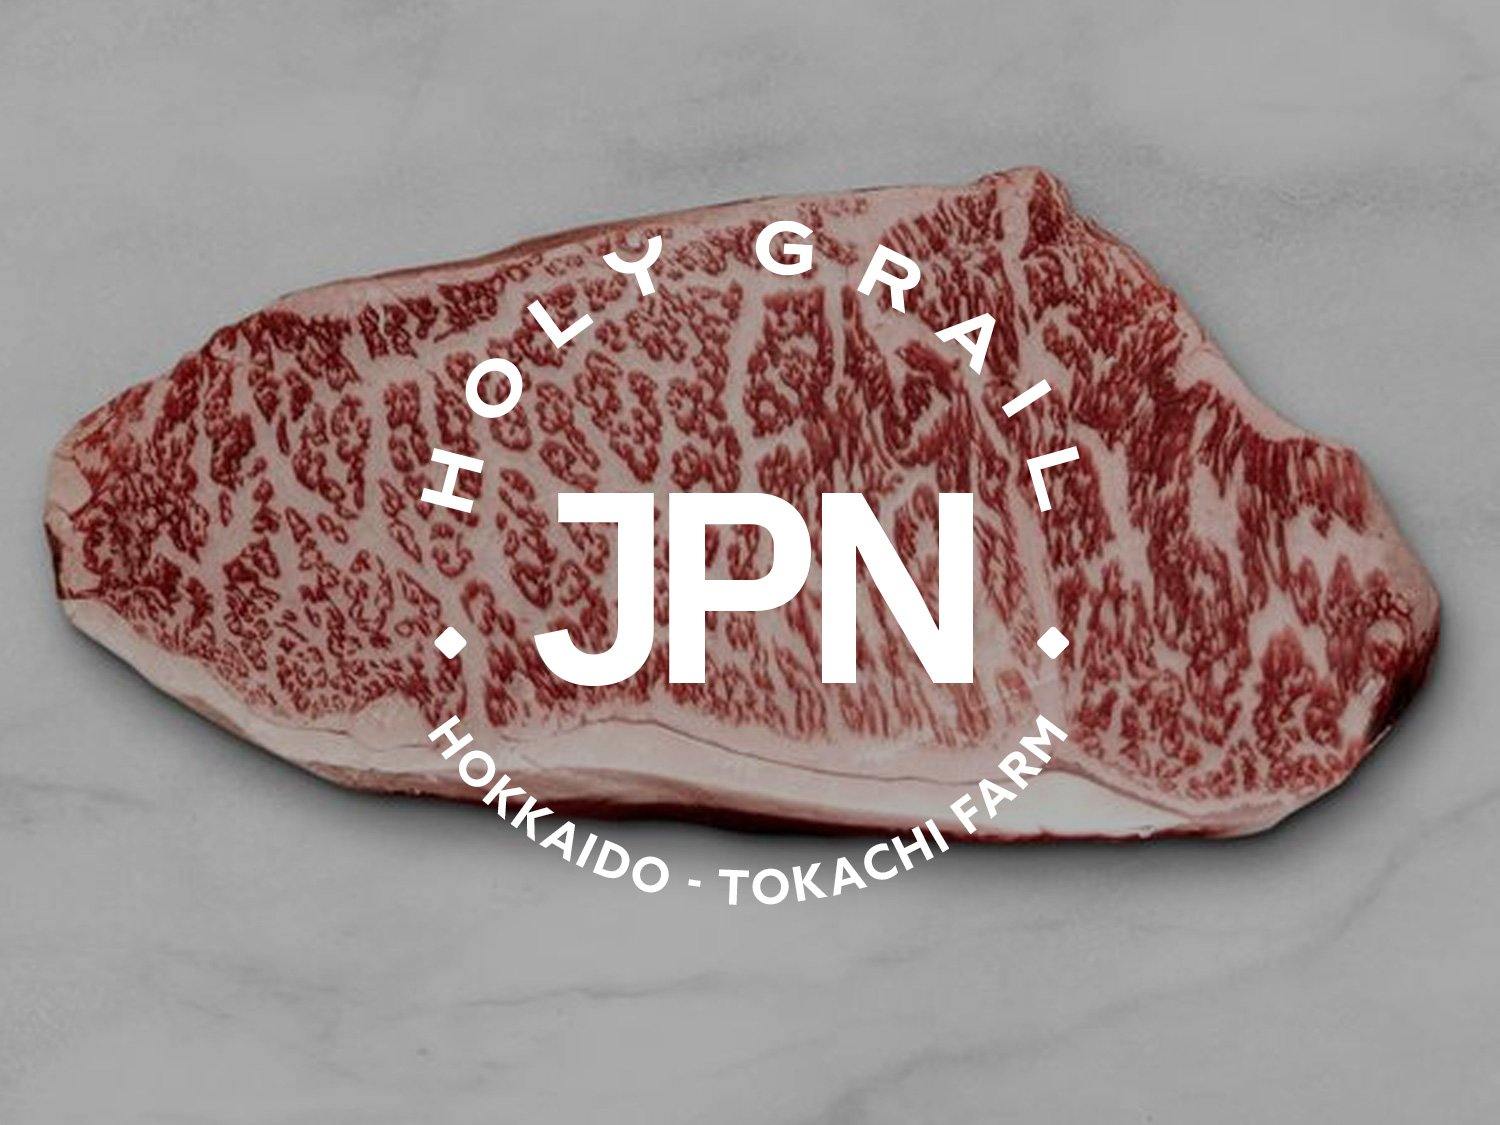 hokkaido tokachi farm beef steak